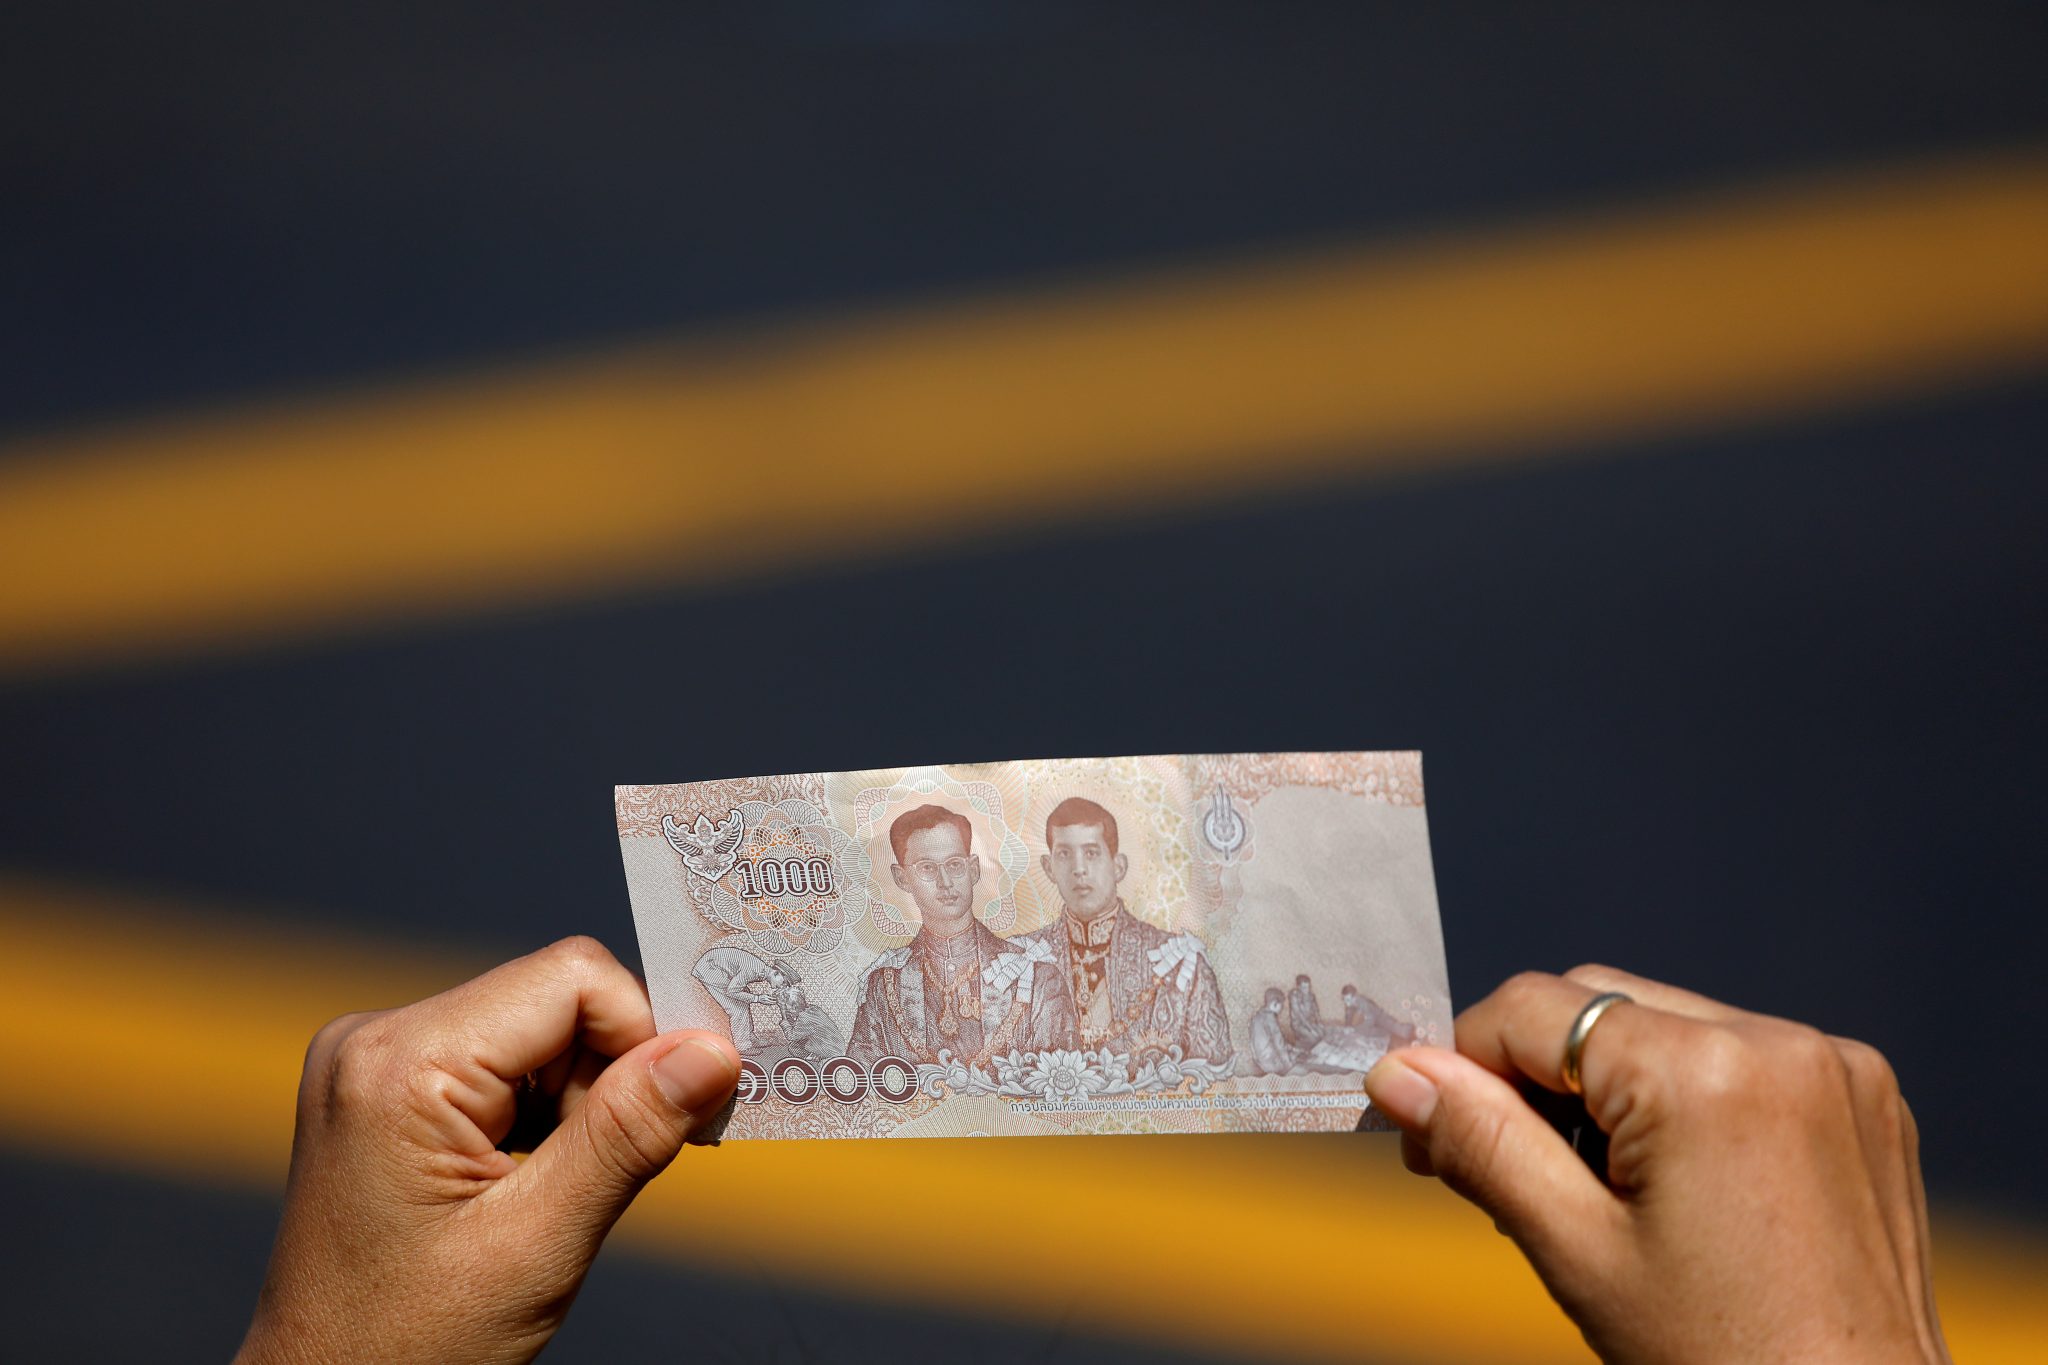 как выглядит валюта тайланда